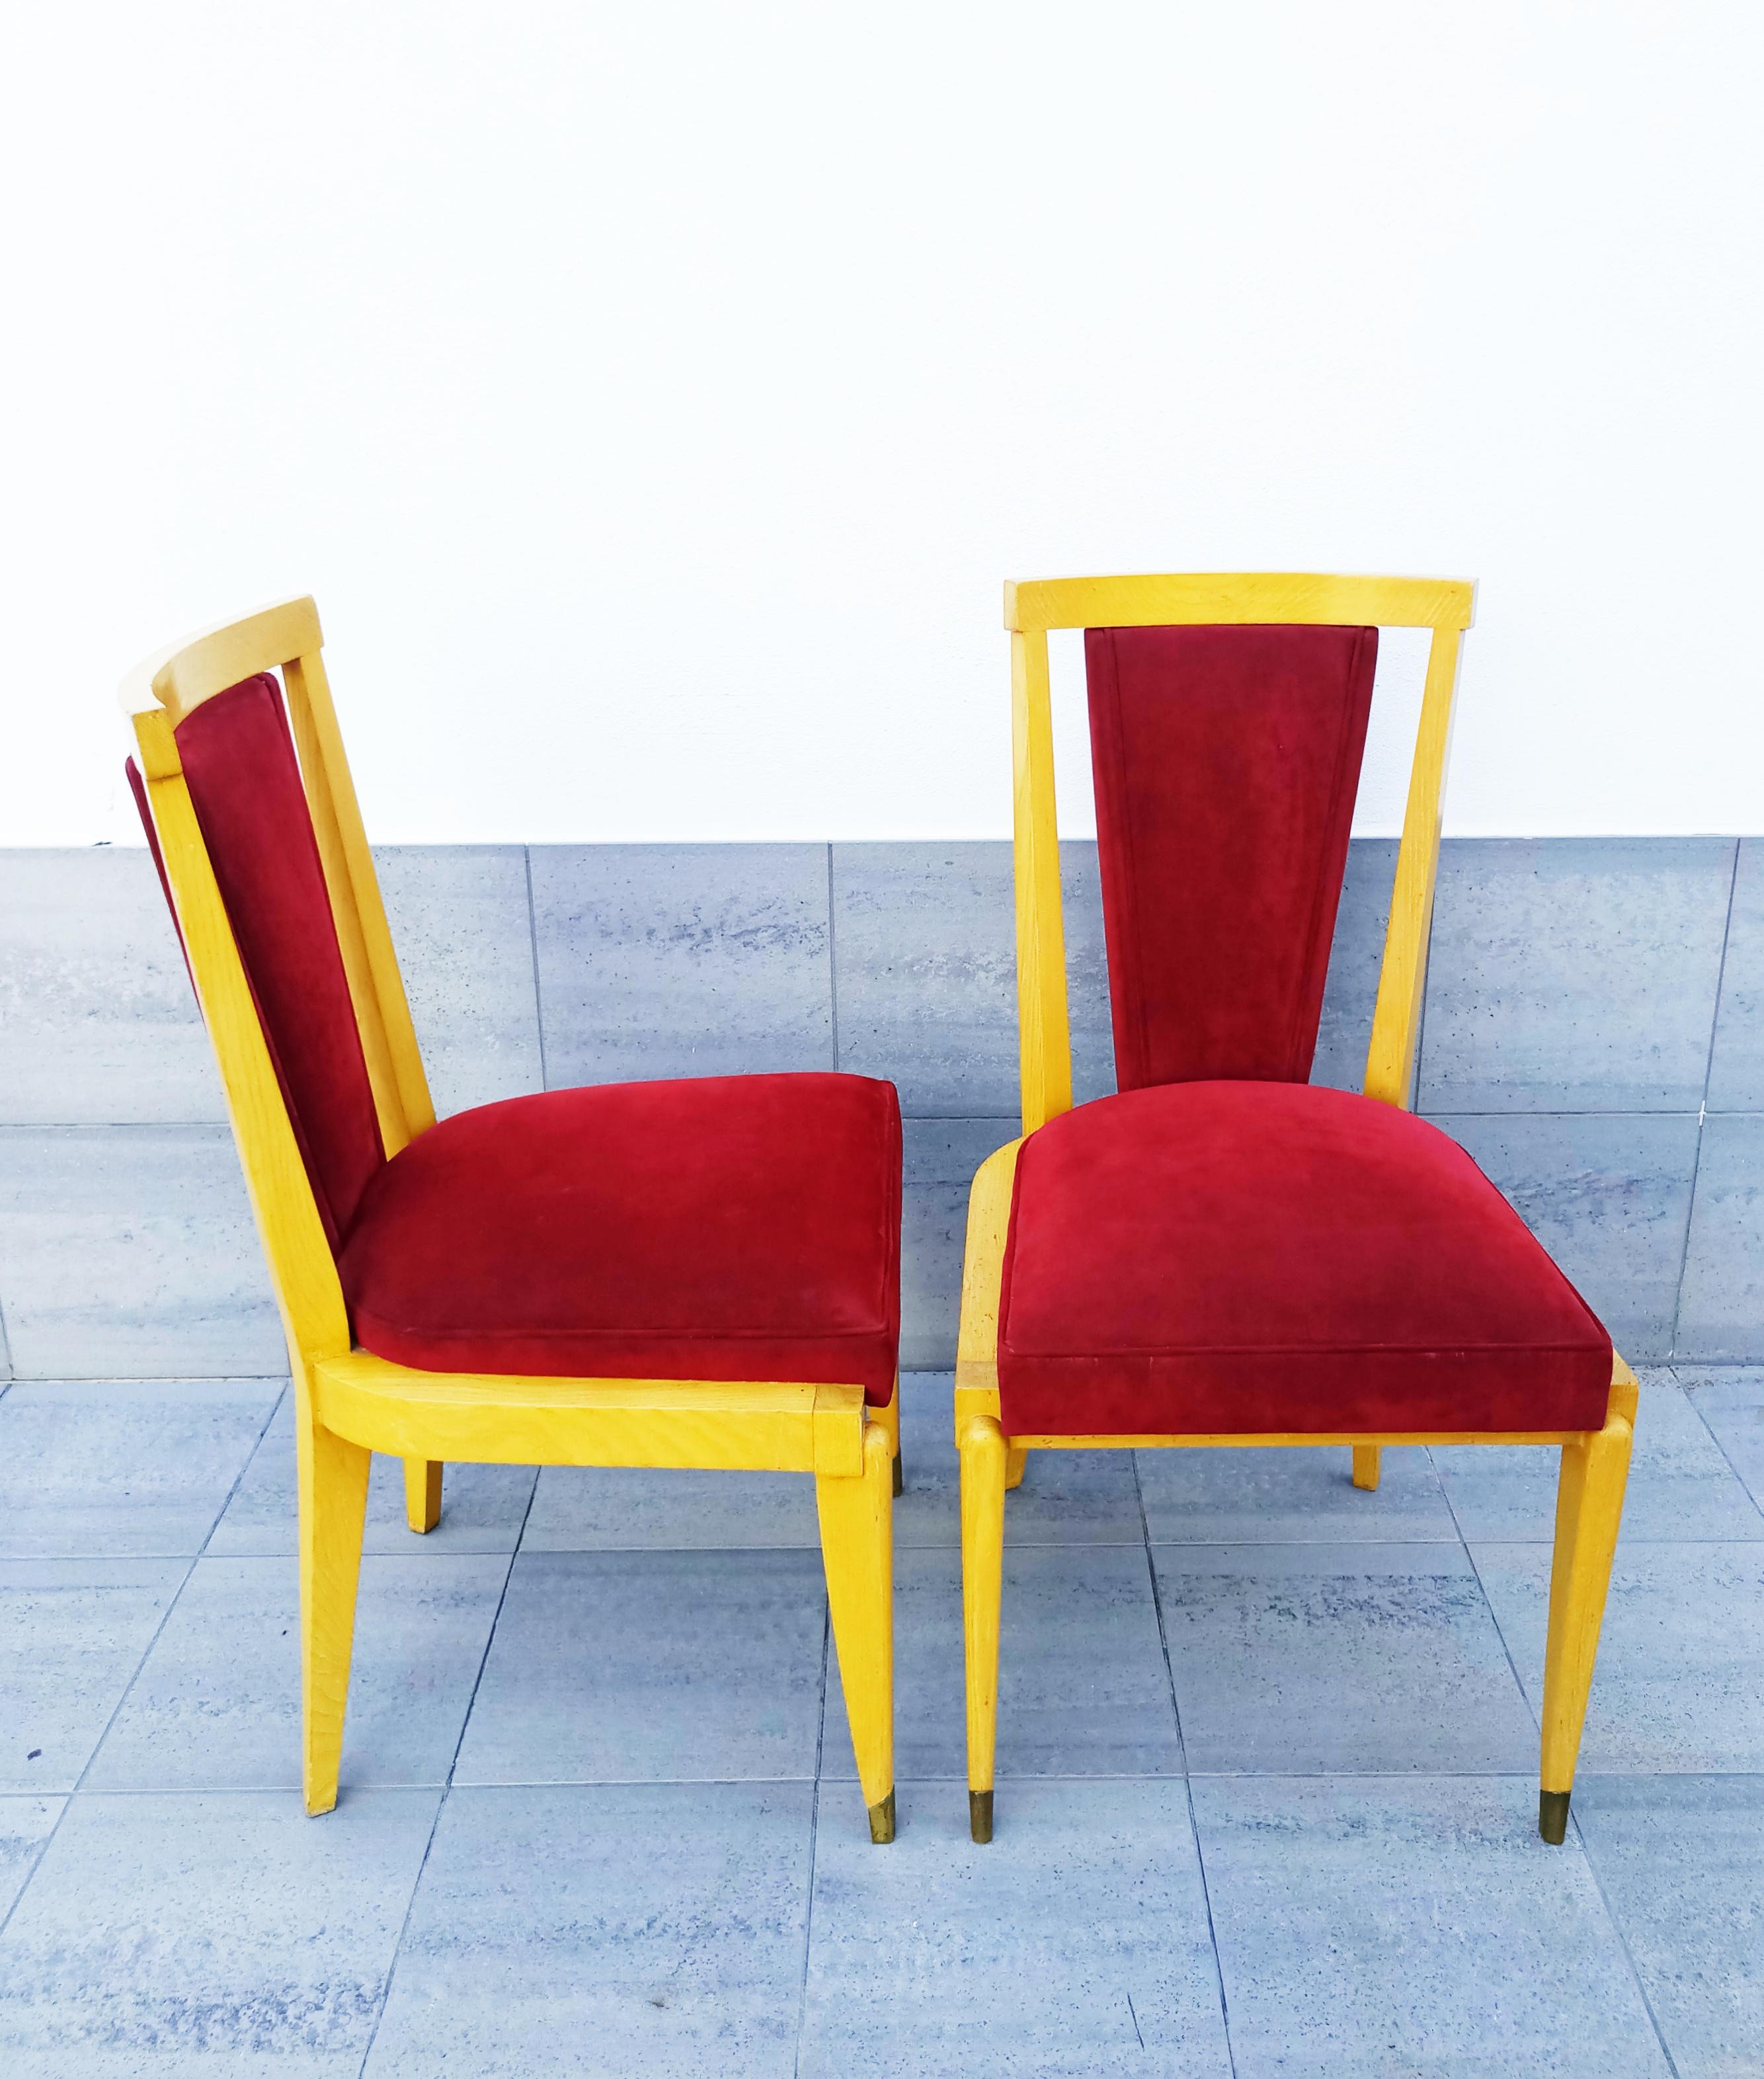 Rare paire élégante de chaises André Arbus, fabriquées en France dans les années 1940. Signé. 
André Arbus (français, 1903-1969) était un designer de meubles, un sculpteur et un architecte. Issu d'une famille d'ébénistes toulousains, il travaille